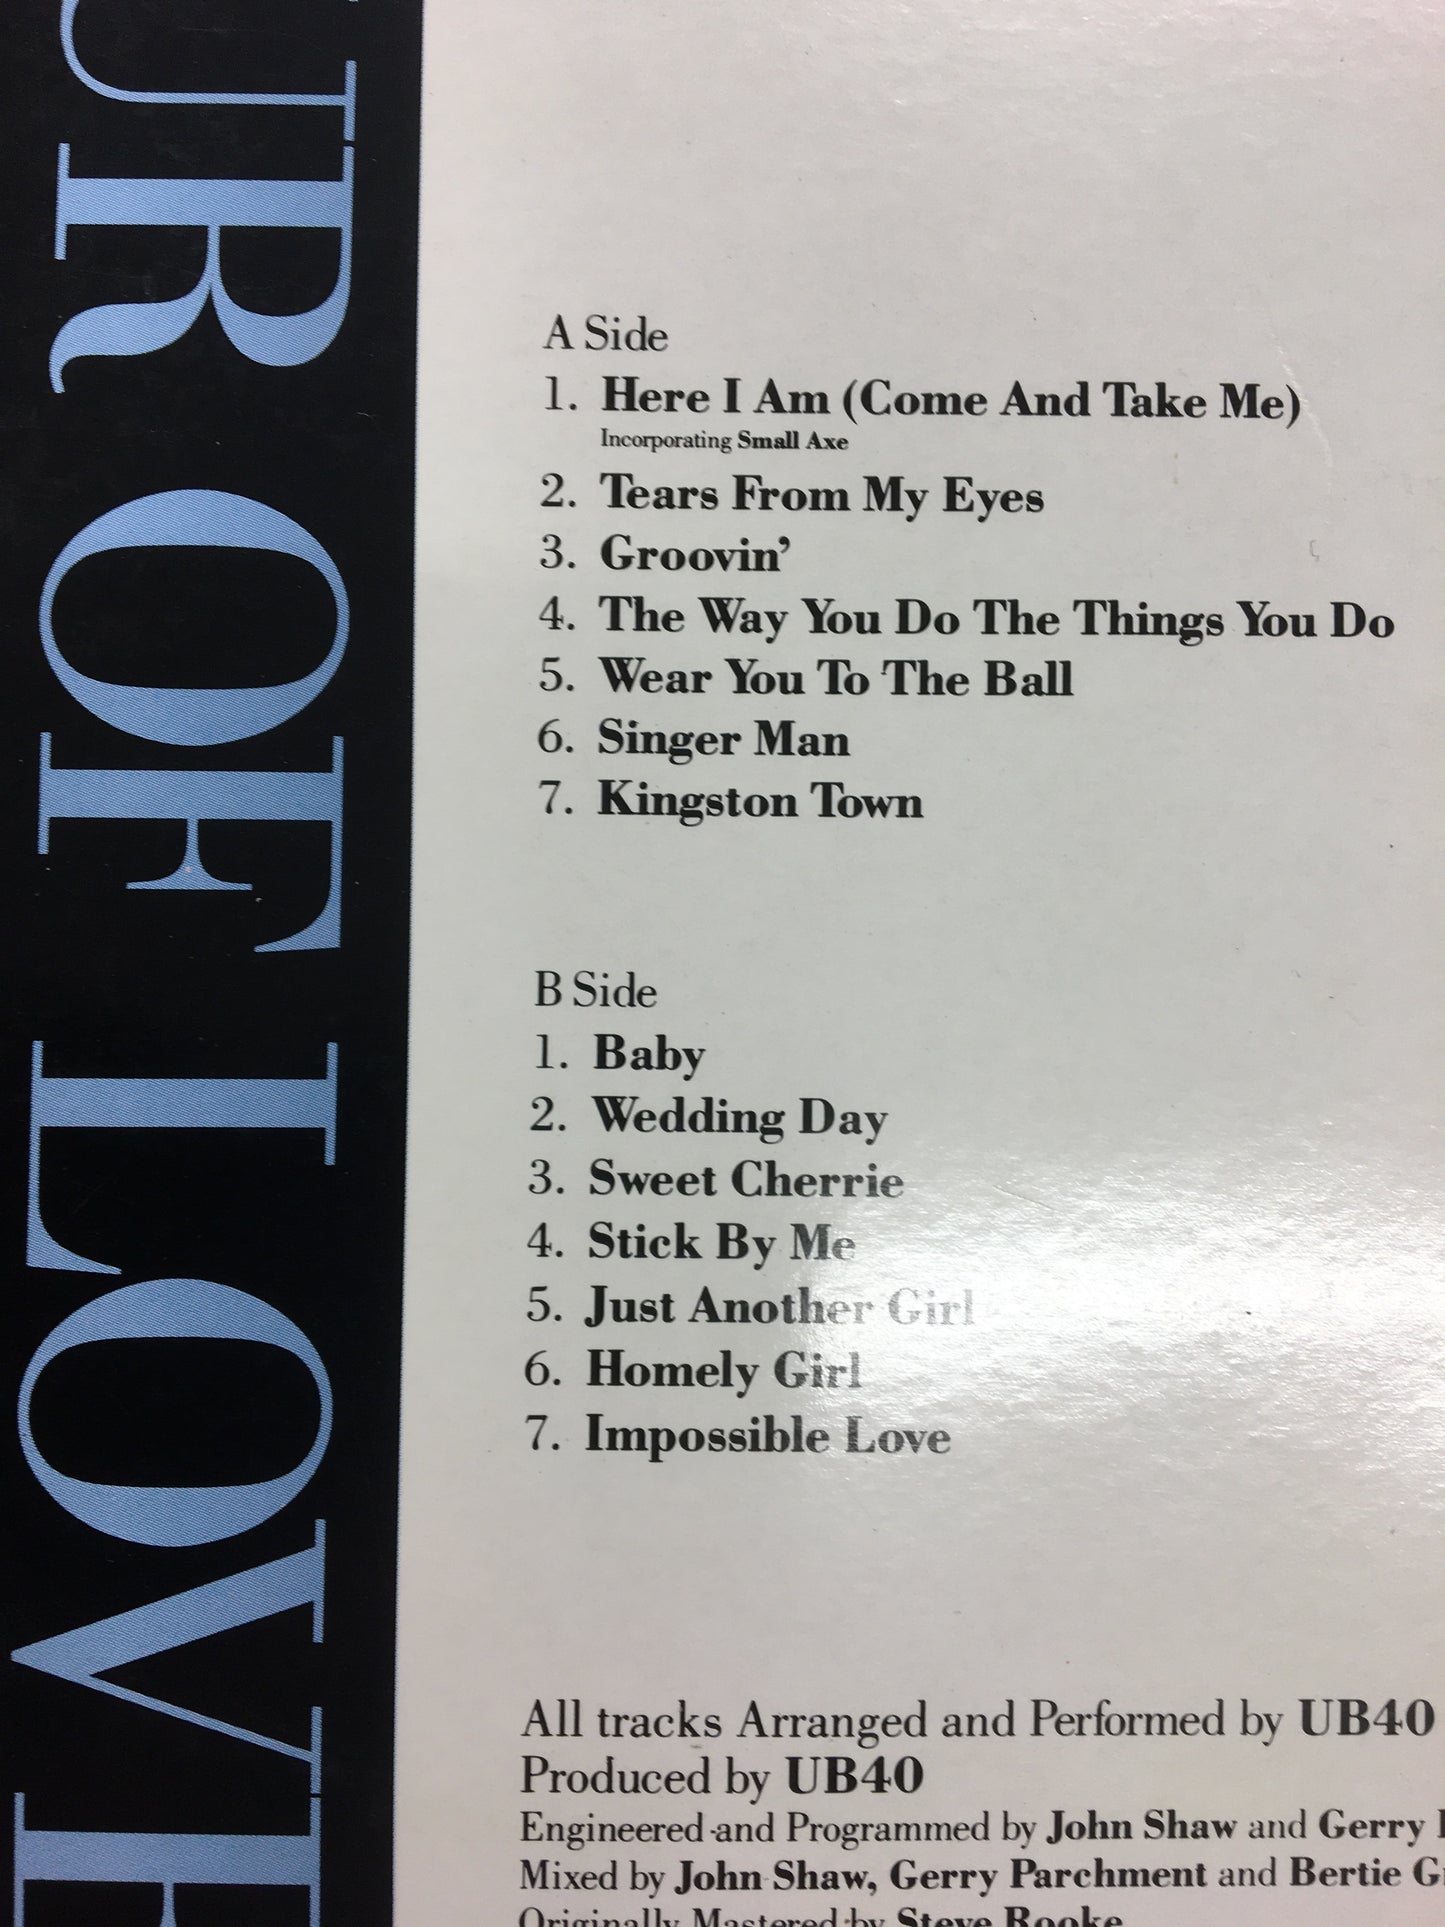 UB40: LABOUR OF LOVE II 1LP VINYL RECORD (1989)